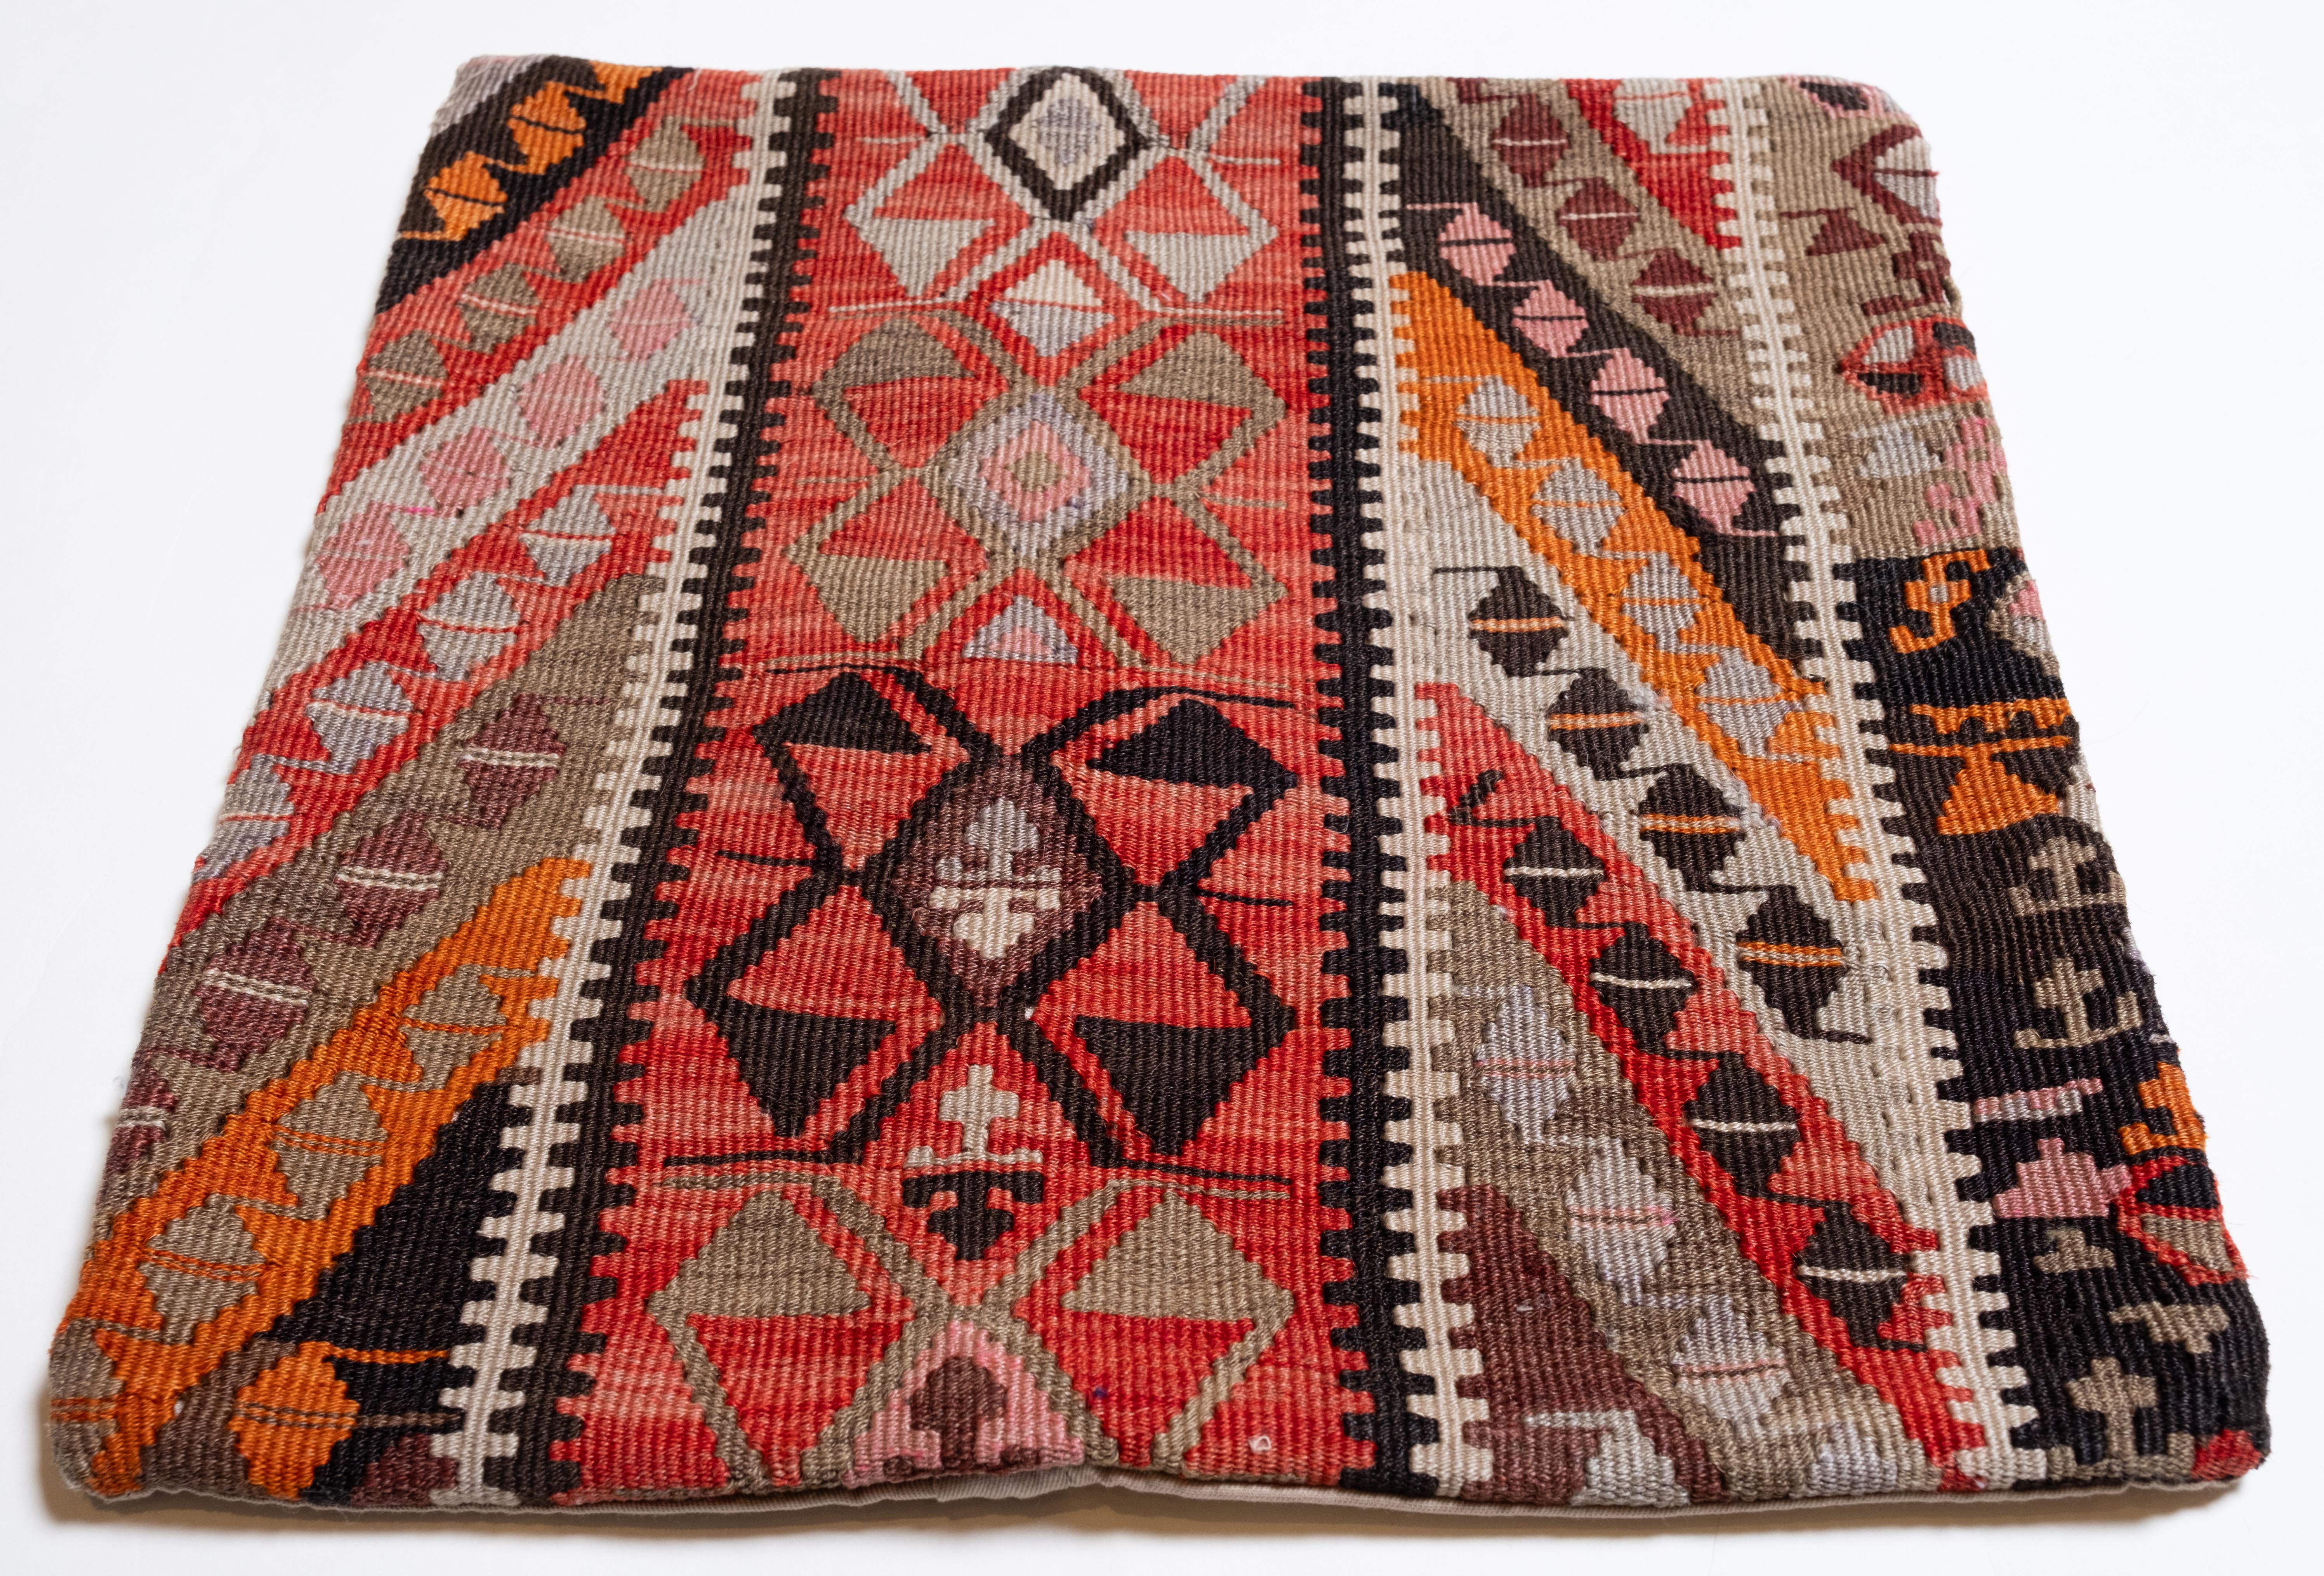 Nous avons fabriqué une housse de coussin en utilisant les parties intactes des kilims anciens et antiques, précieux et de grande qualité, qui ne peuvent être réparés. Comme une peinture, une partie du paysage est découpée dans un kilim, et même